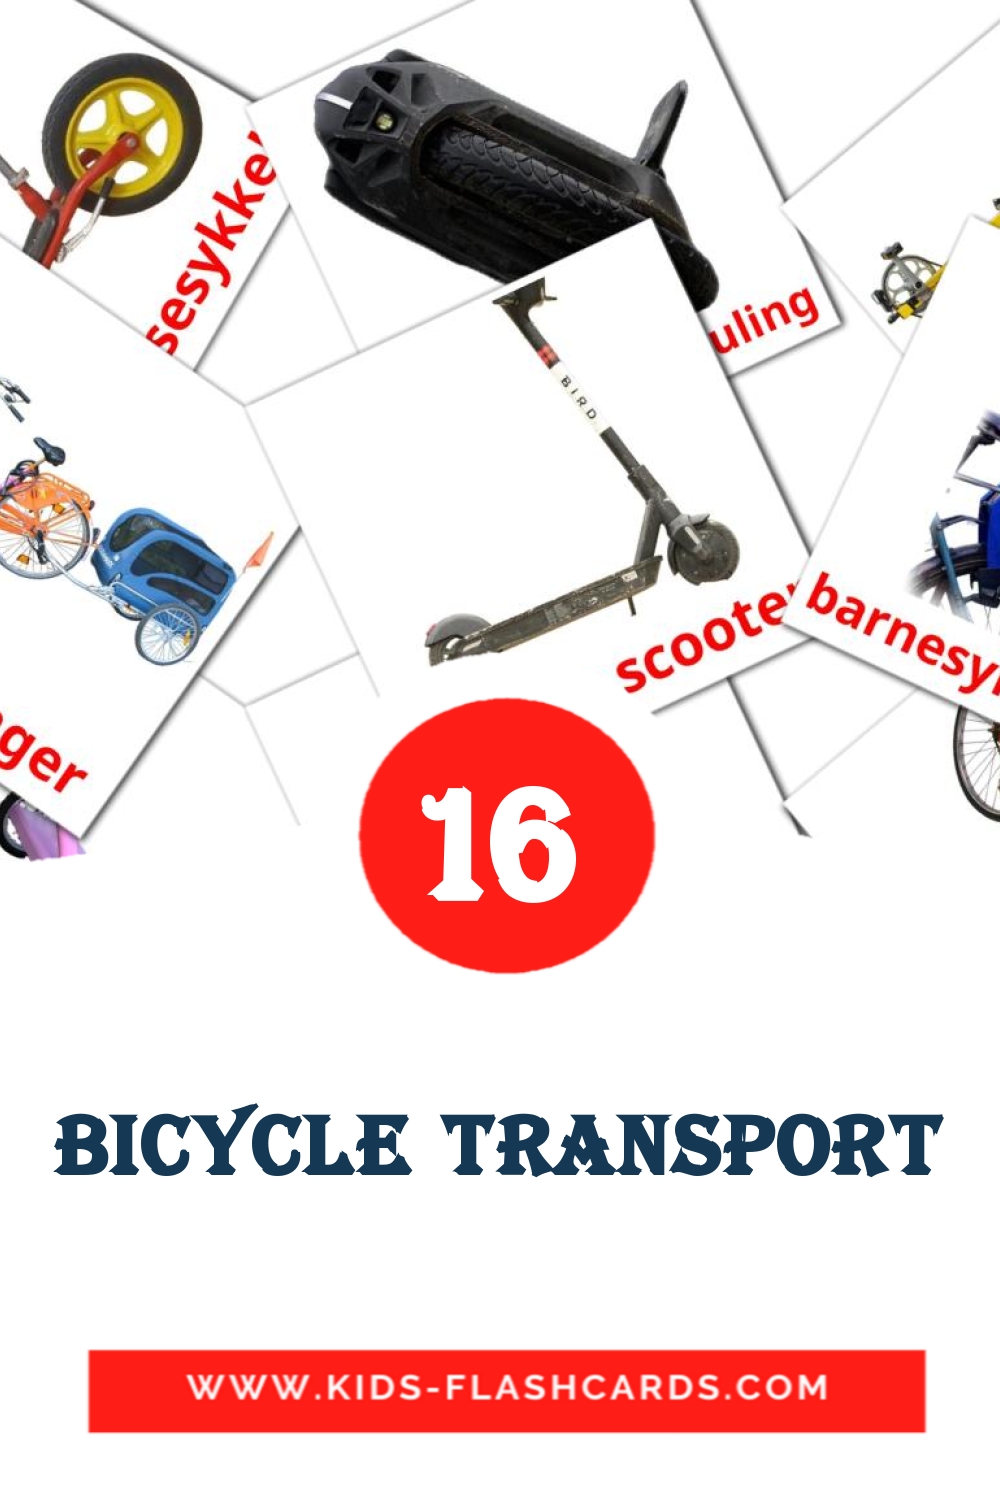 16 tarjetas didacticas de Bicycle transport para el jardín de infancia en noruego